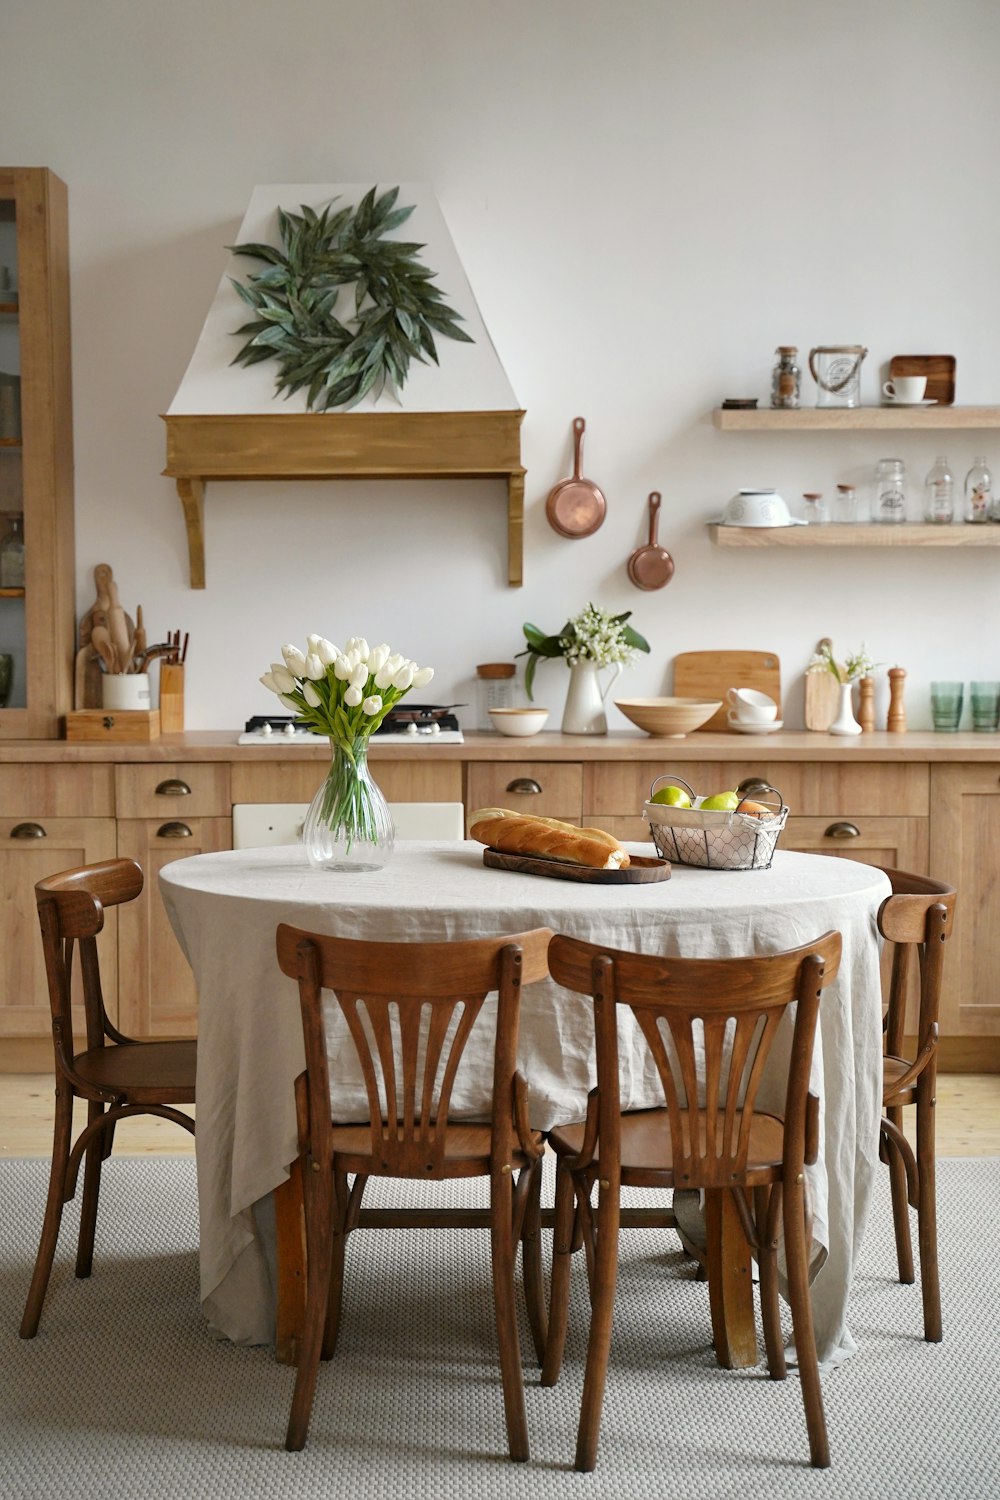 Una cucina con tavolo e sedie e una pianta in vaso foto – Al chiuso  Immagine gratuita su Unsplash